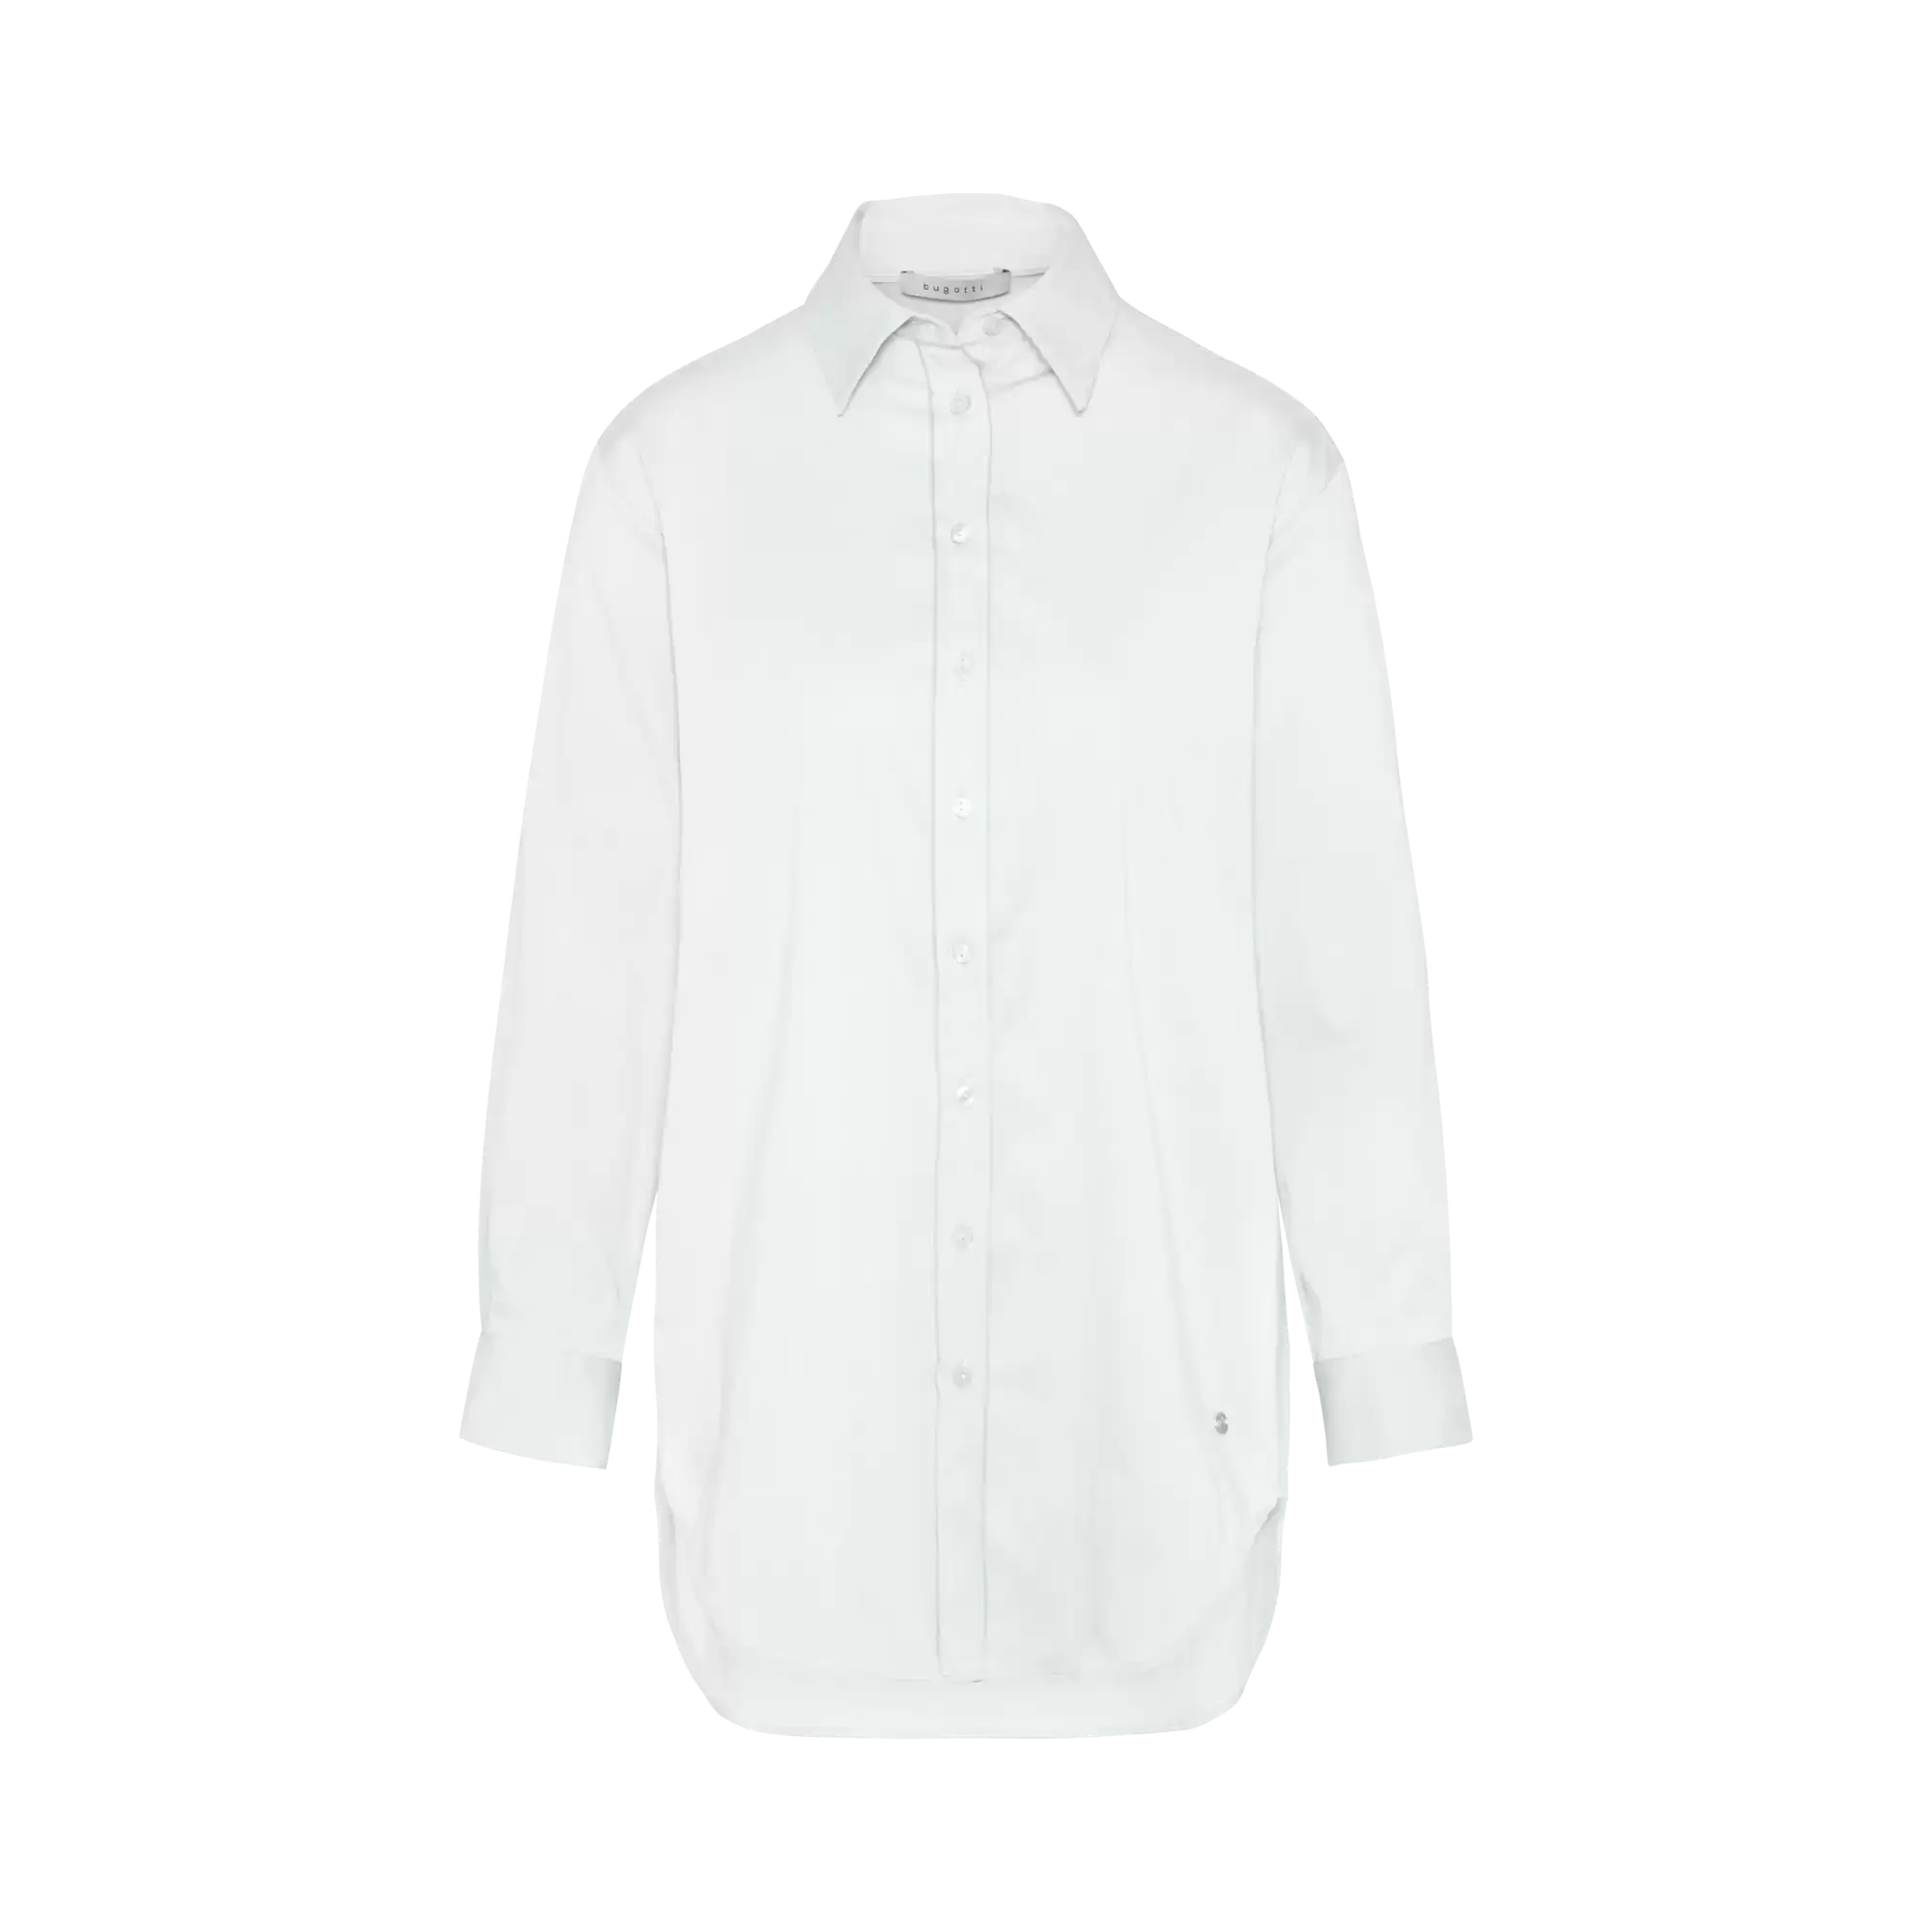 Hemdbluse aus elastischer Baumwollware in weiß